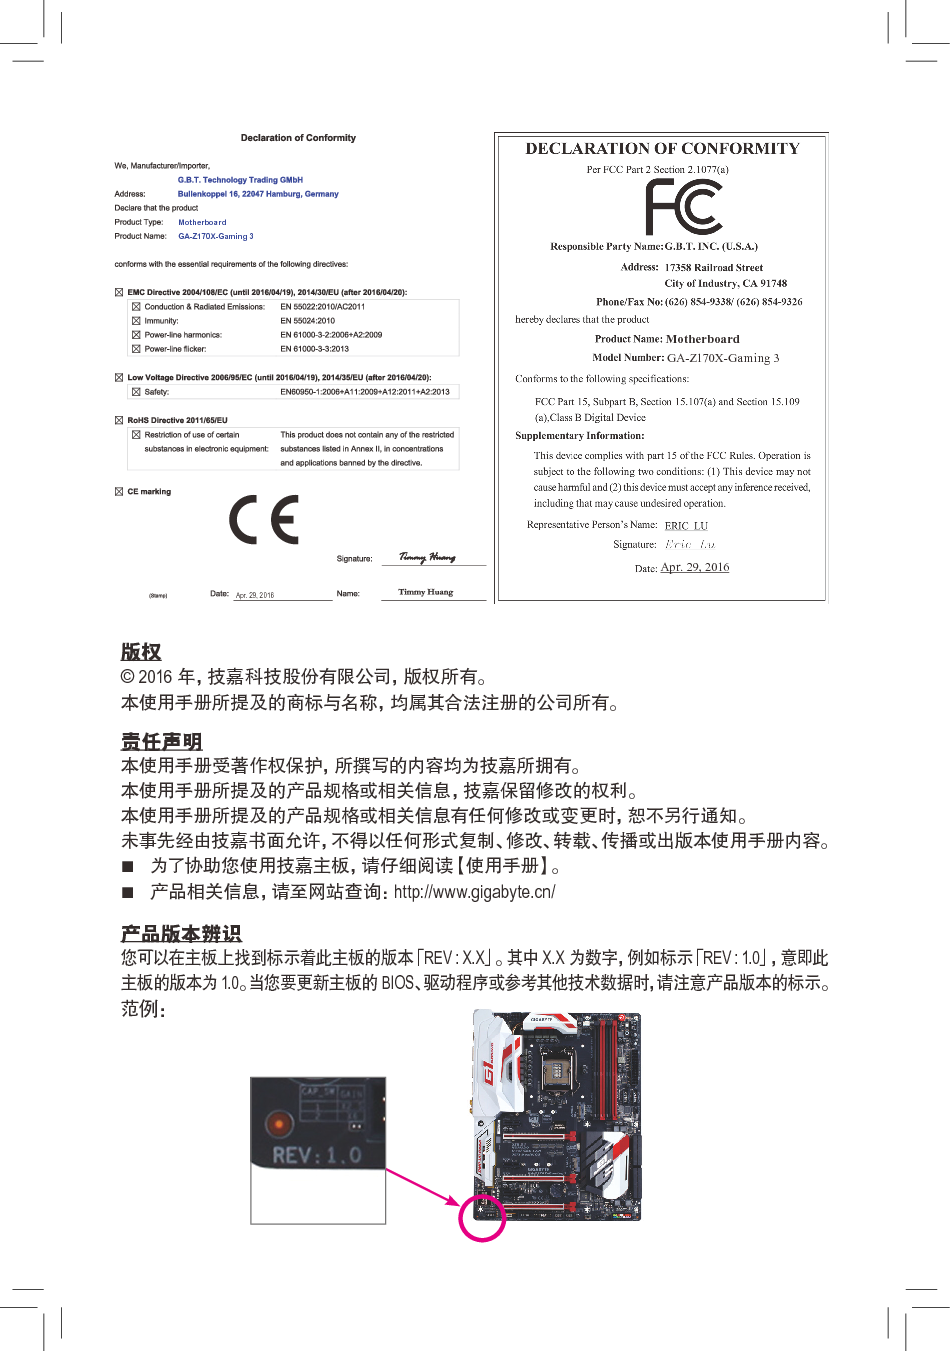 技嘉 Gigabyte GA-Z170X-Gaming 3 1101版 使用手册 第1页